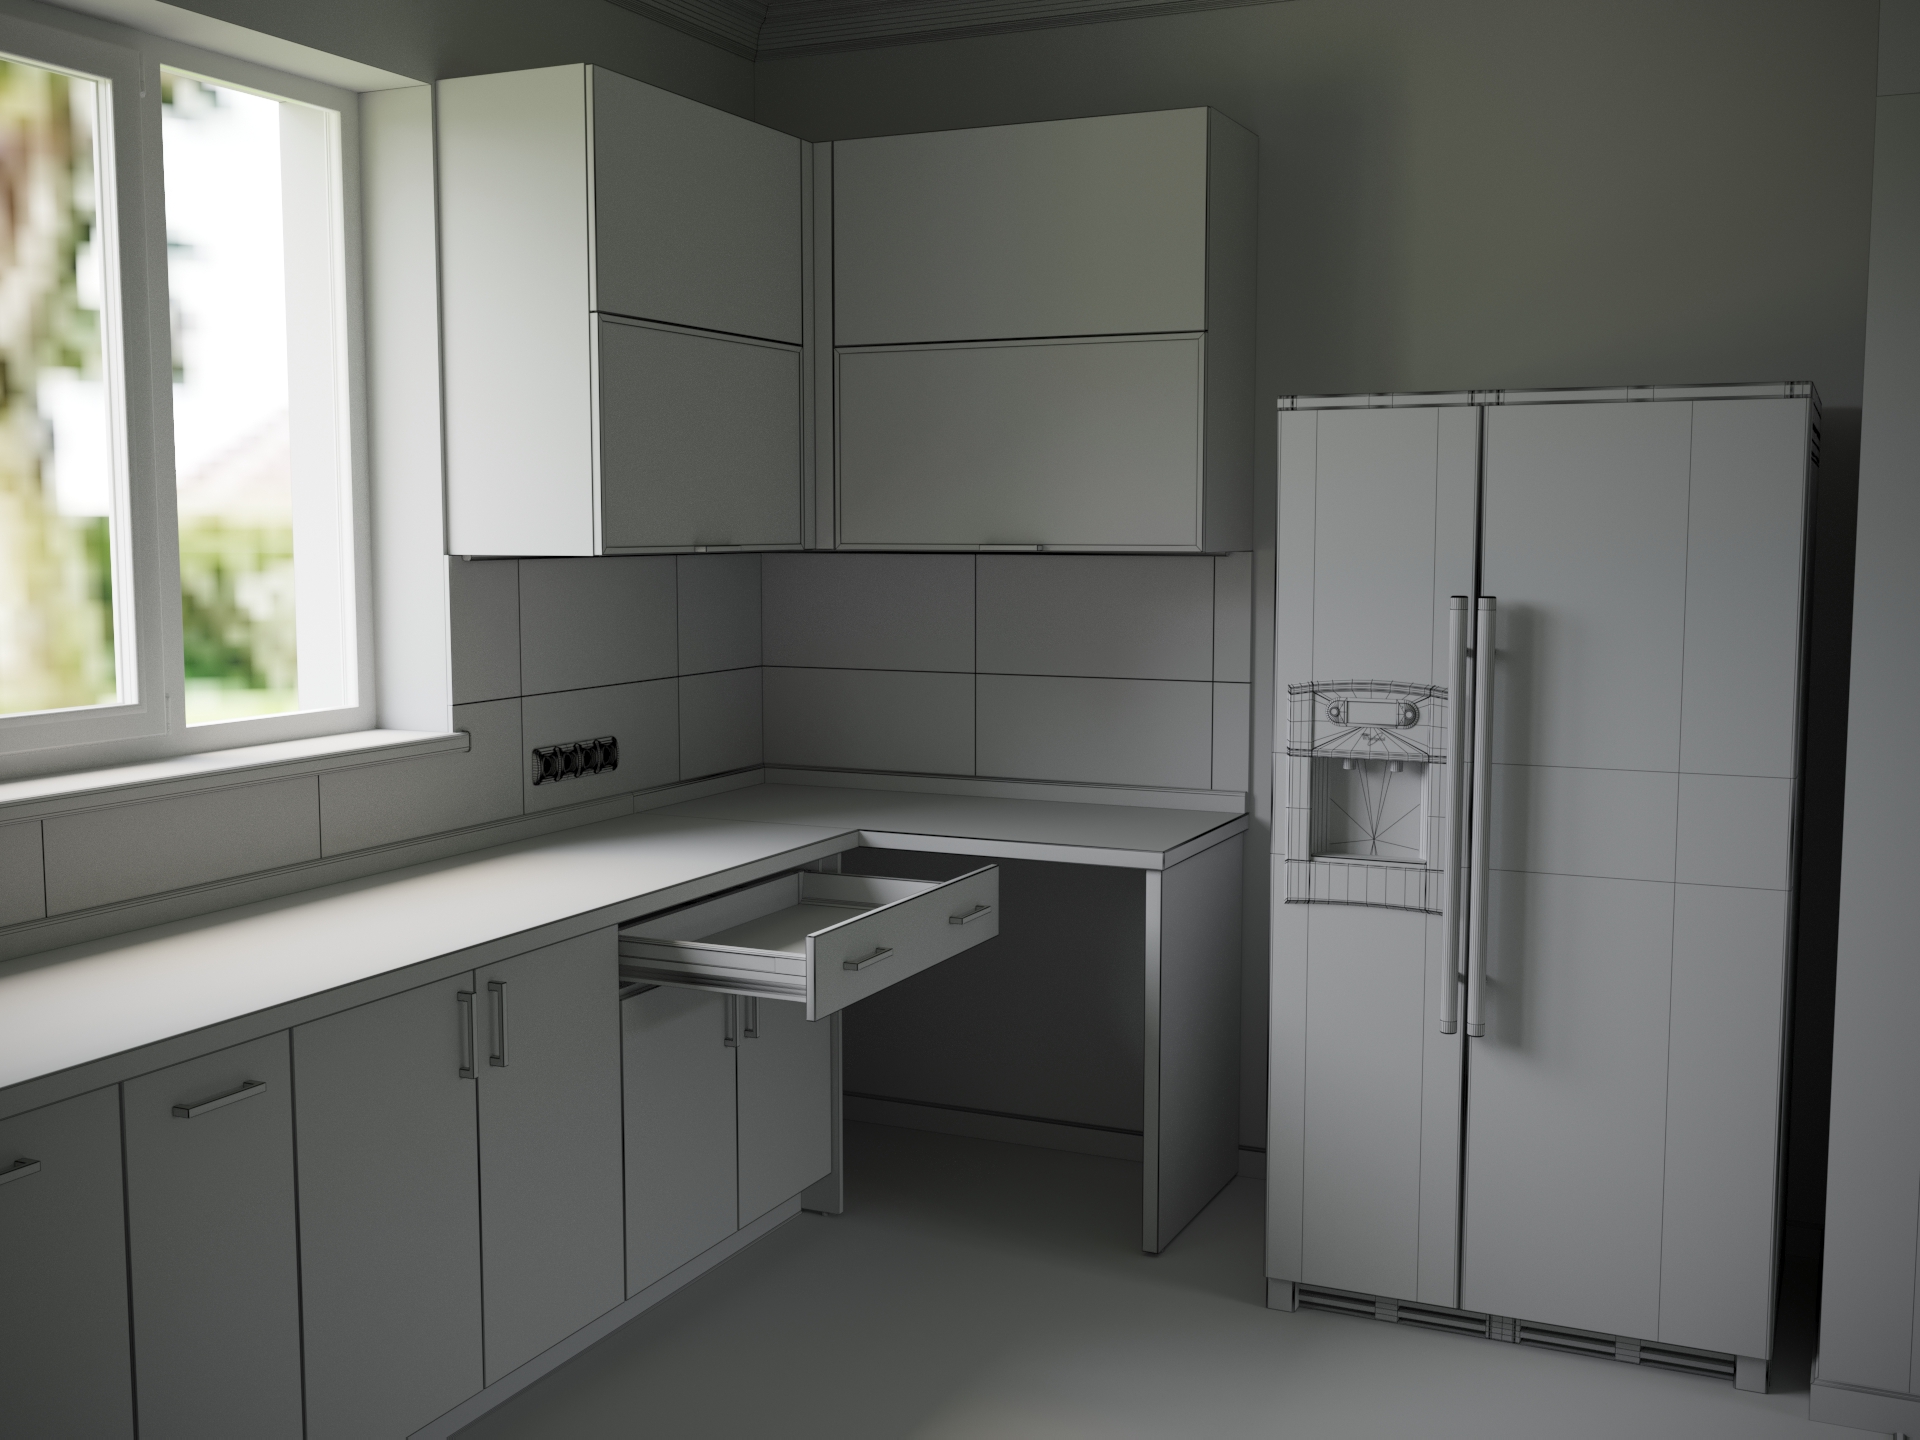 imagen de visualización de una cocina en 3d max corona render